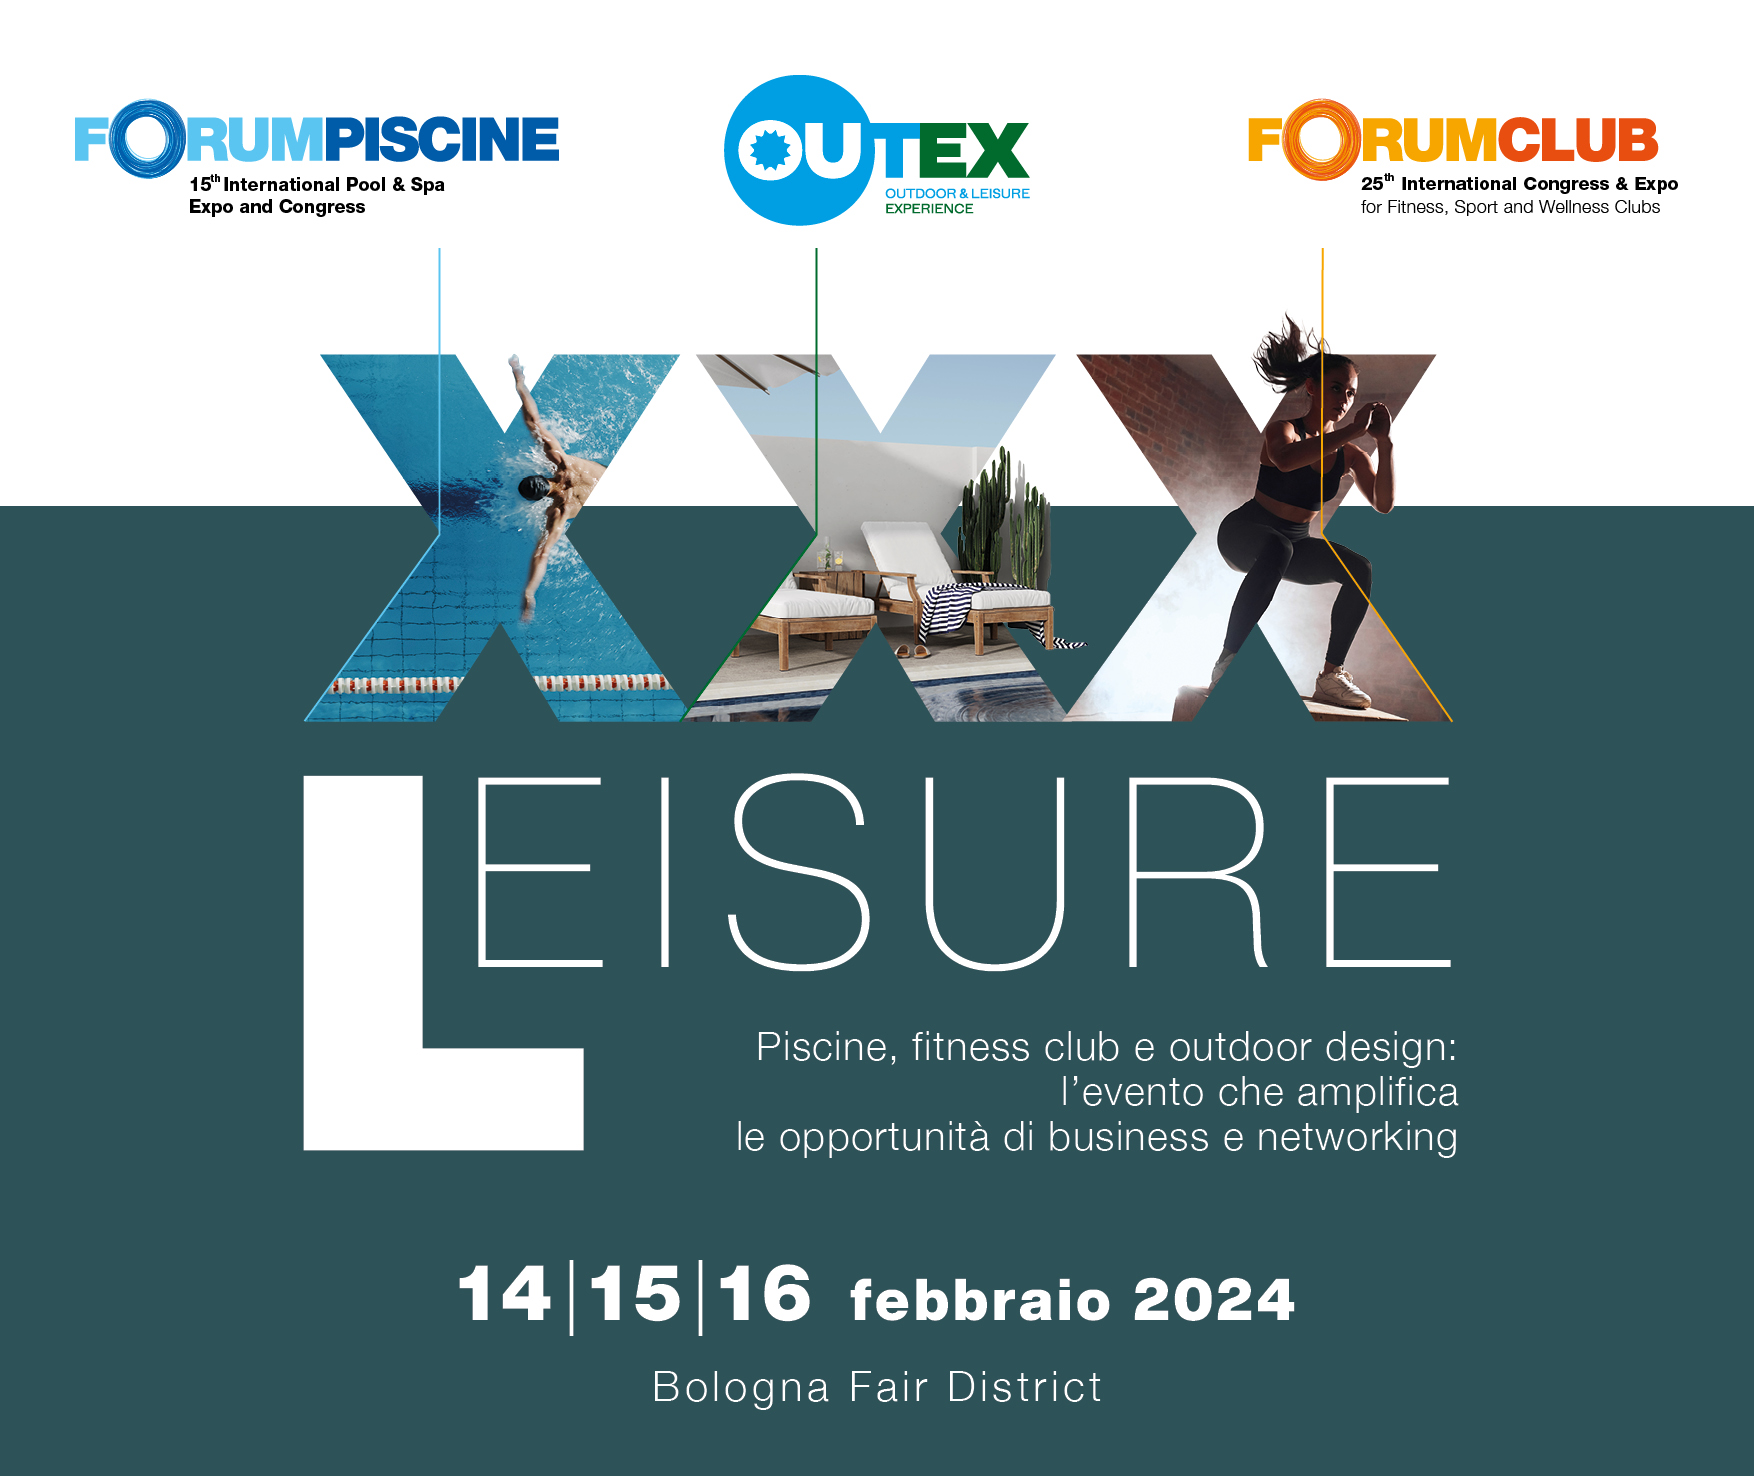 ForumPiscine con Outex e ForumClub: in Fiera a Bologna dal 14 al 16 febbraio 2024 FP OUTEX FC 2024 ADV Comunicato Stampa